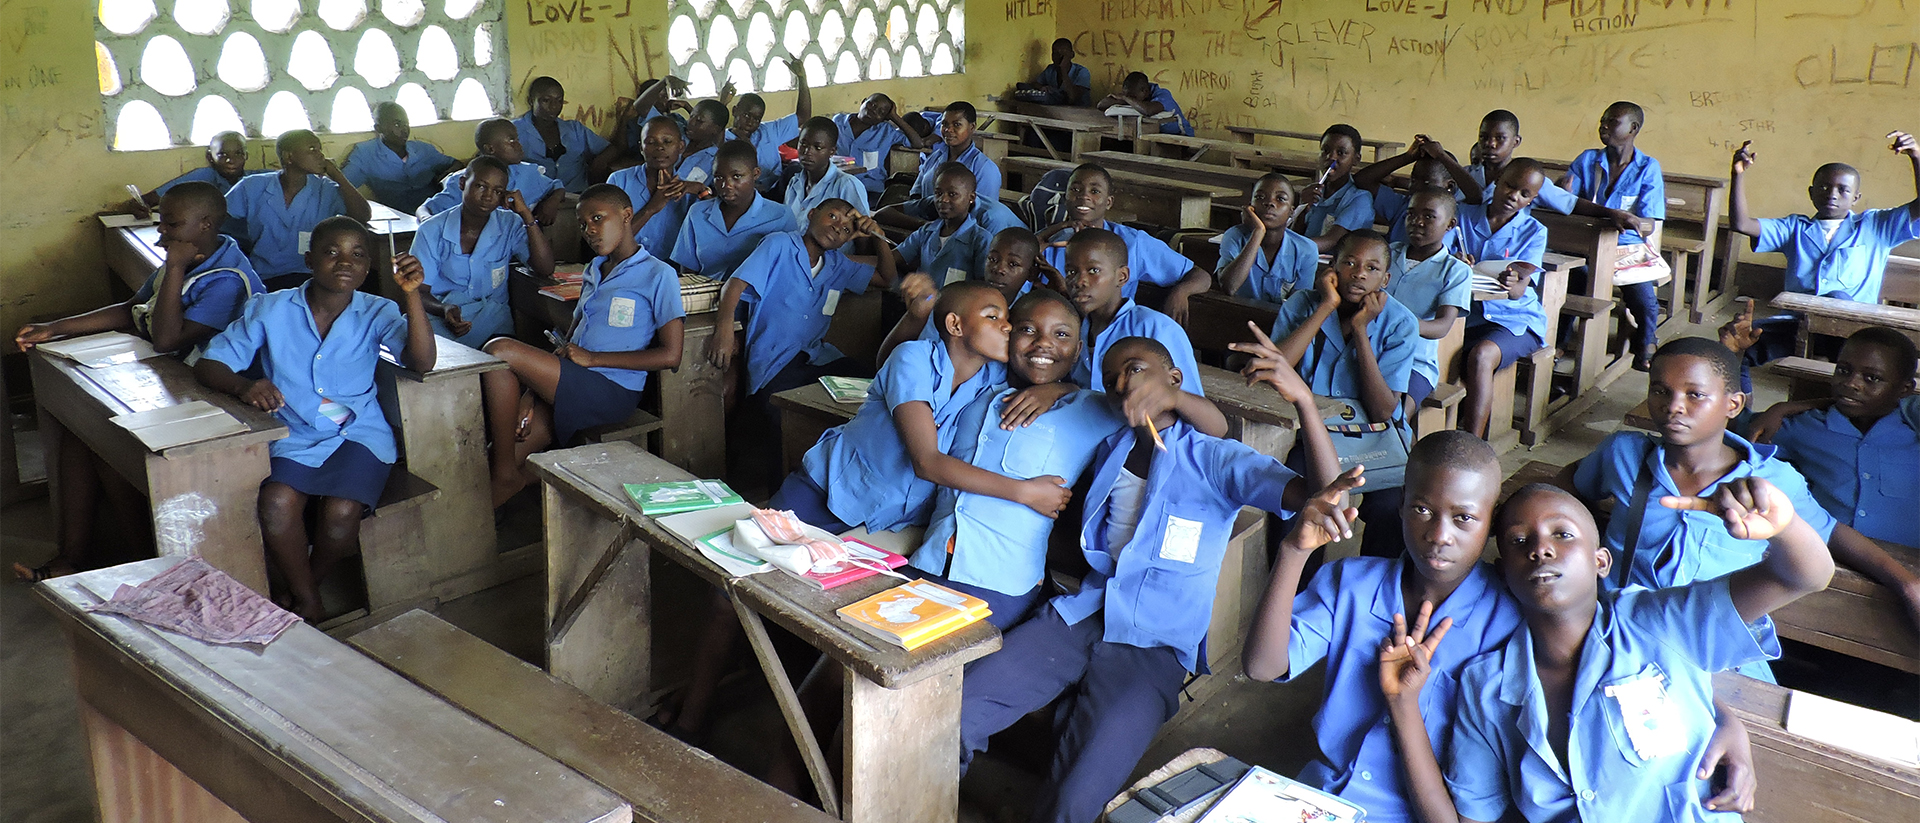 Dans la région de Kumba, des écoliers dans un collège de Ebonji, dans le sud-ouest du Cameroun. Photo prétexte | Wikimedia Common - Daniel Maginot - CC BY-SA 4.0